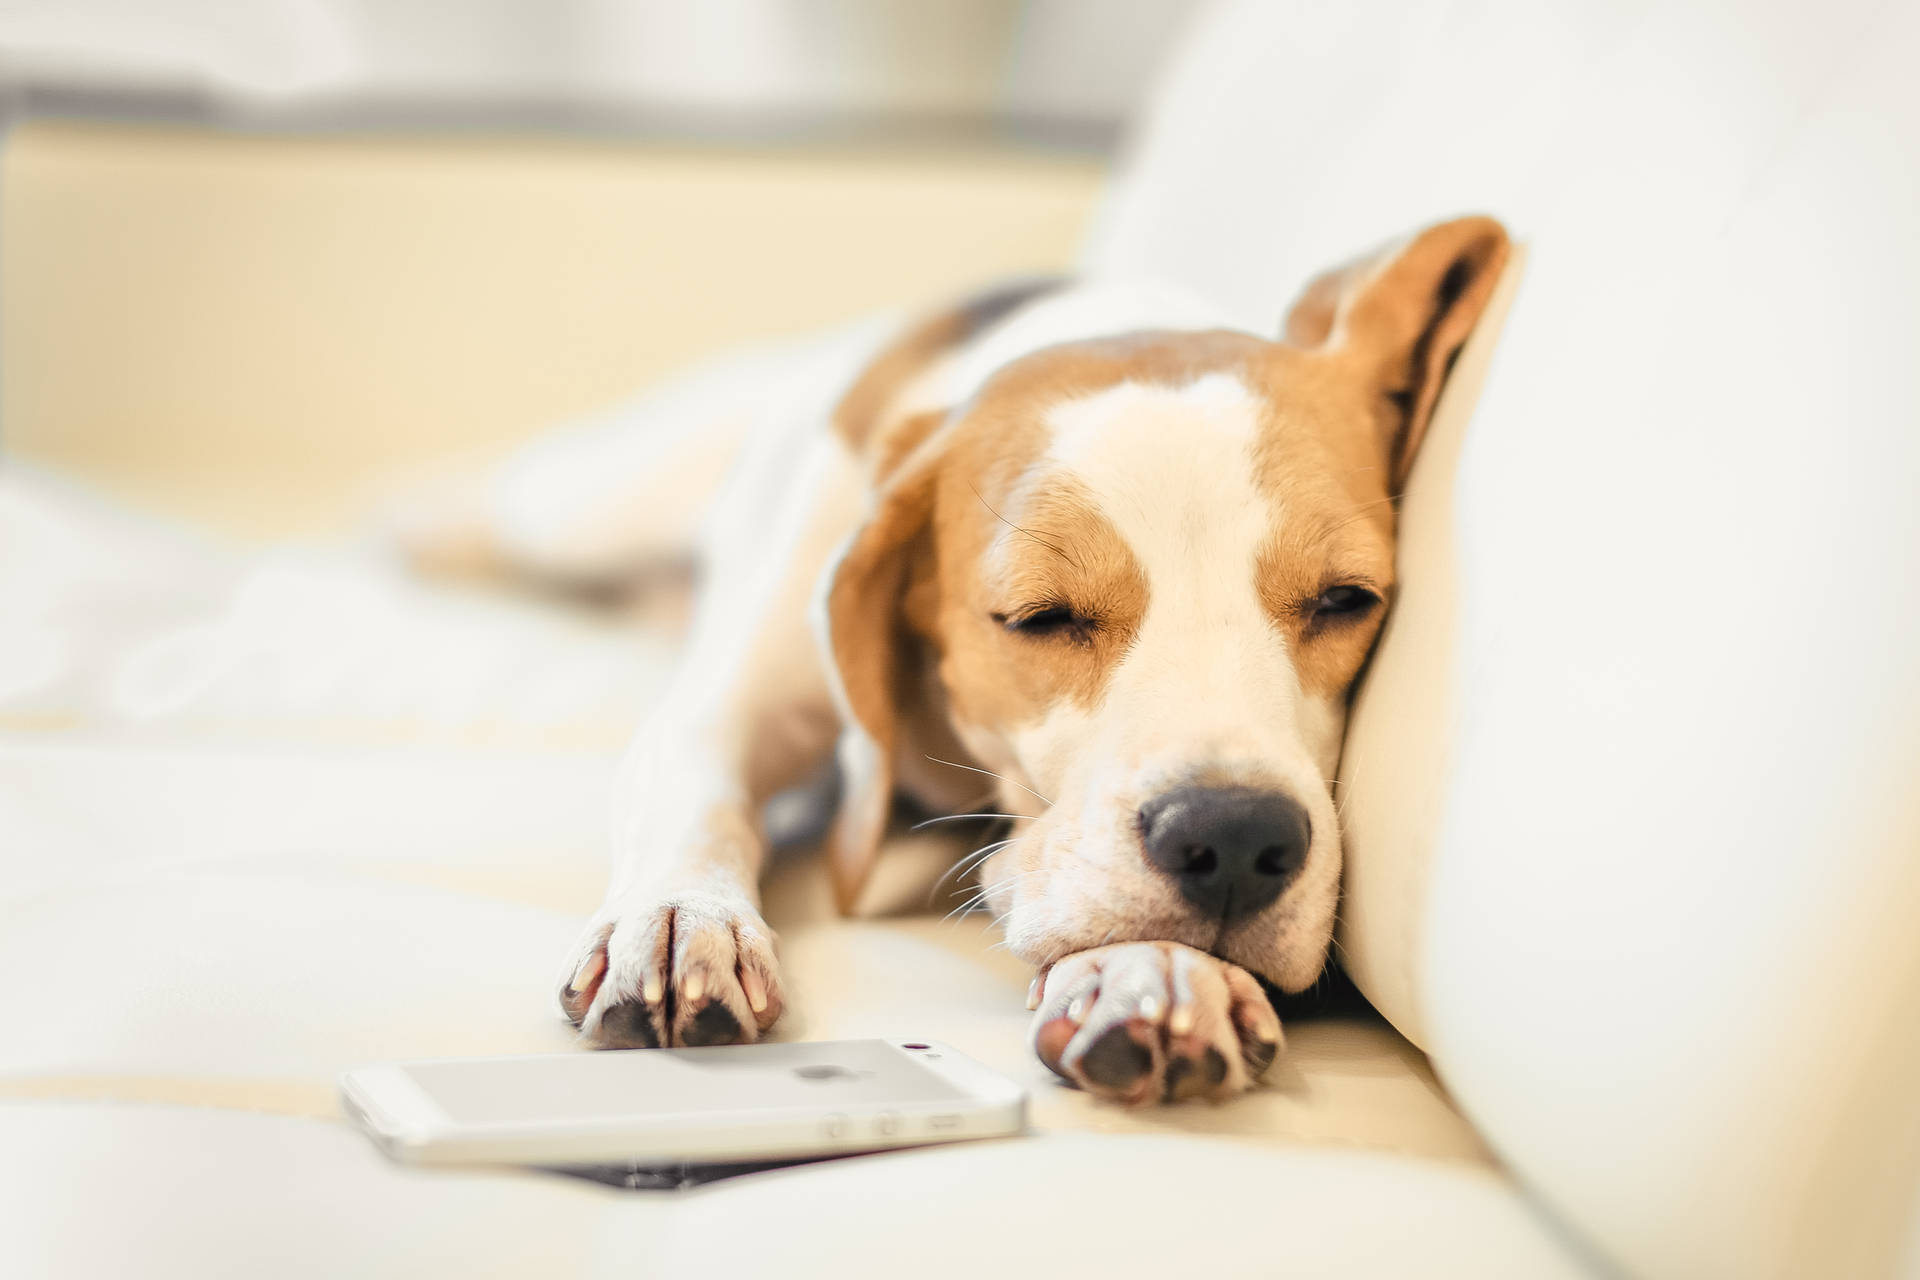 Sleepy Beagle On A Couch